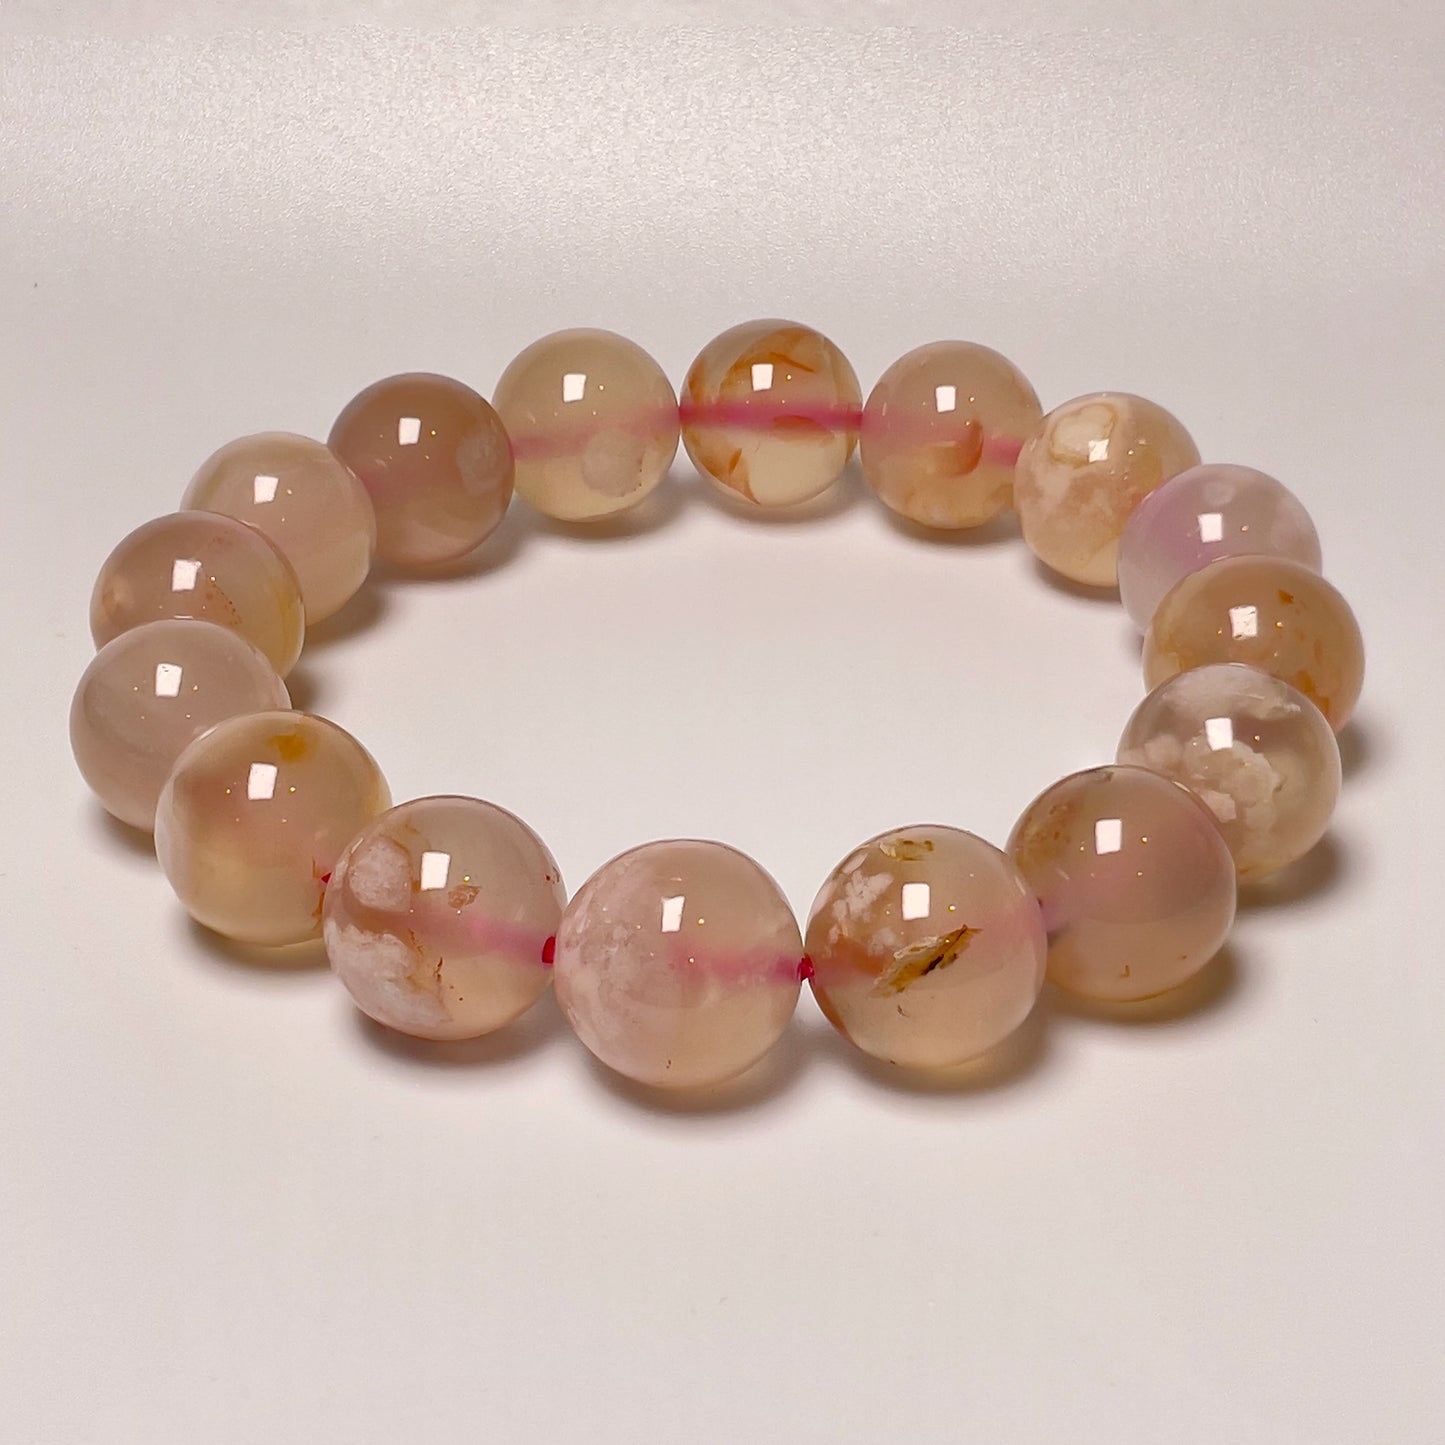 Stonelry Natural Sakura (Cherry Blossom) Agate Beaded Bracelet (9 to 12+mm)